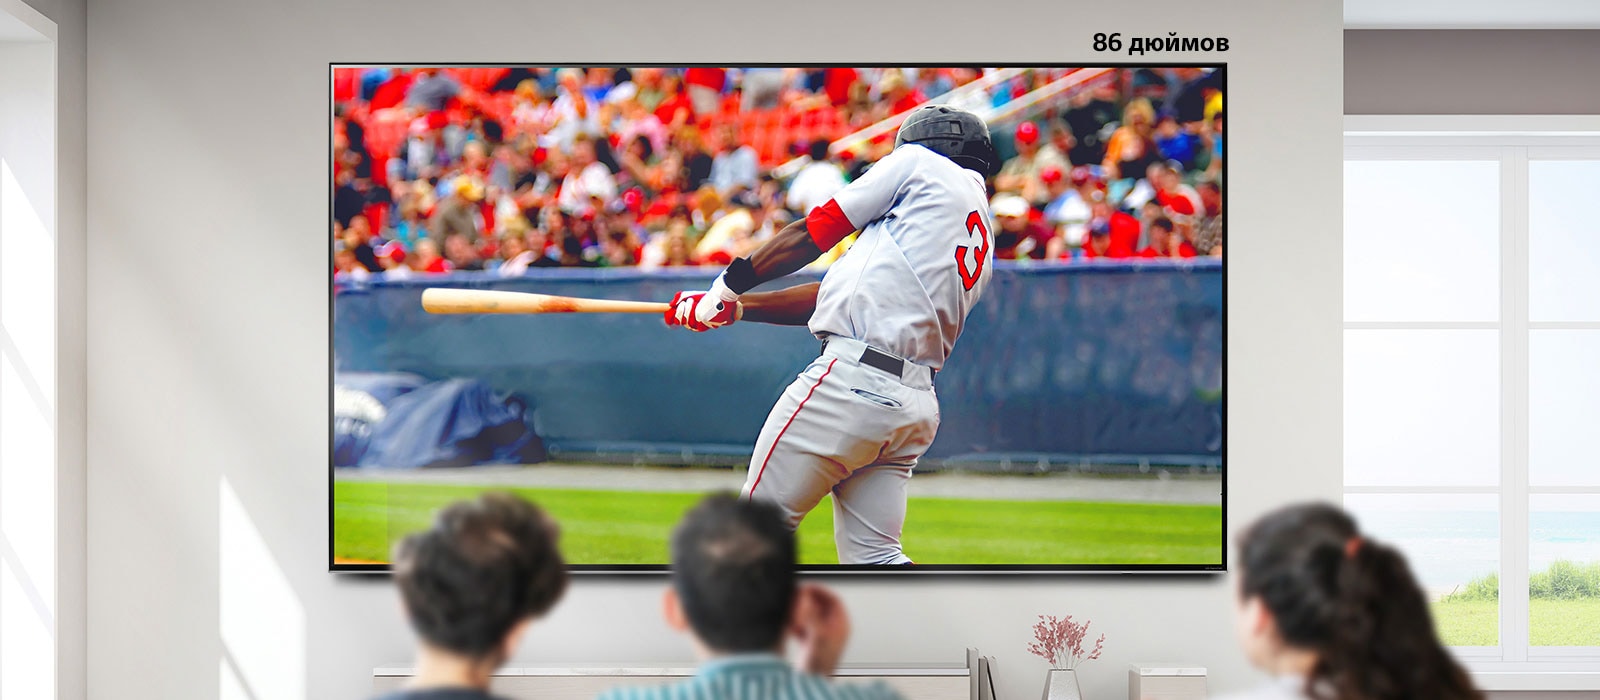 Прокручиваемое изображение с тремя мужчинами, смотрящими бейсбольный матч на экране телевизора, закрепленного на стене. При прокручивании слева направо экран становится больше.